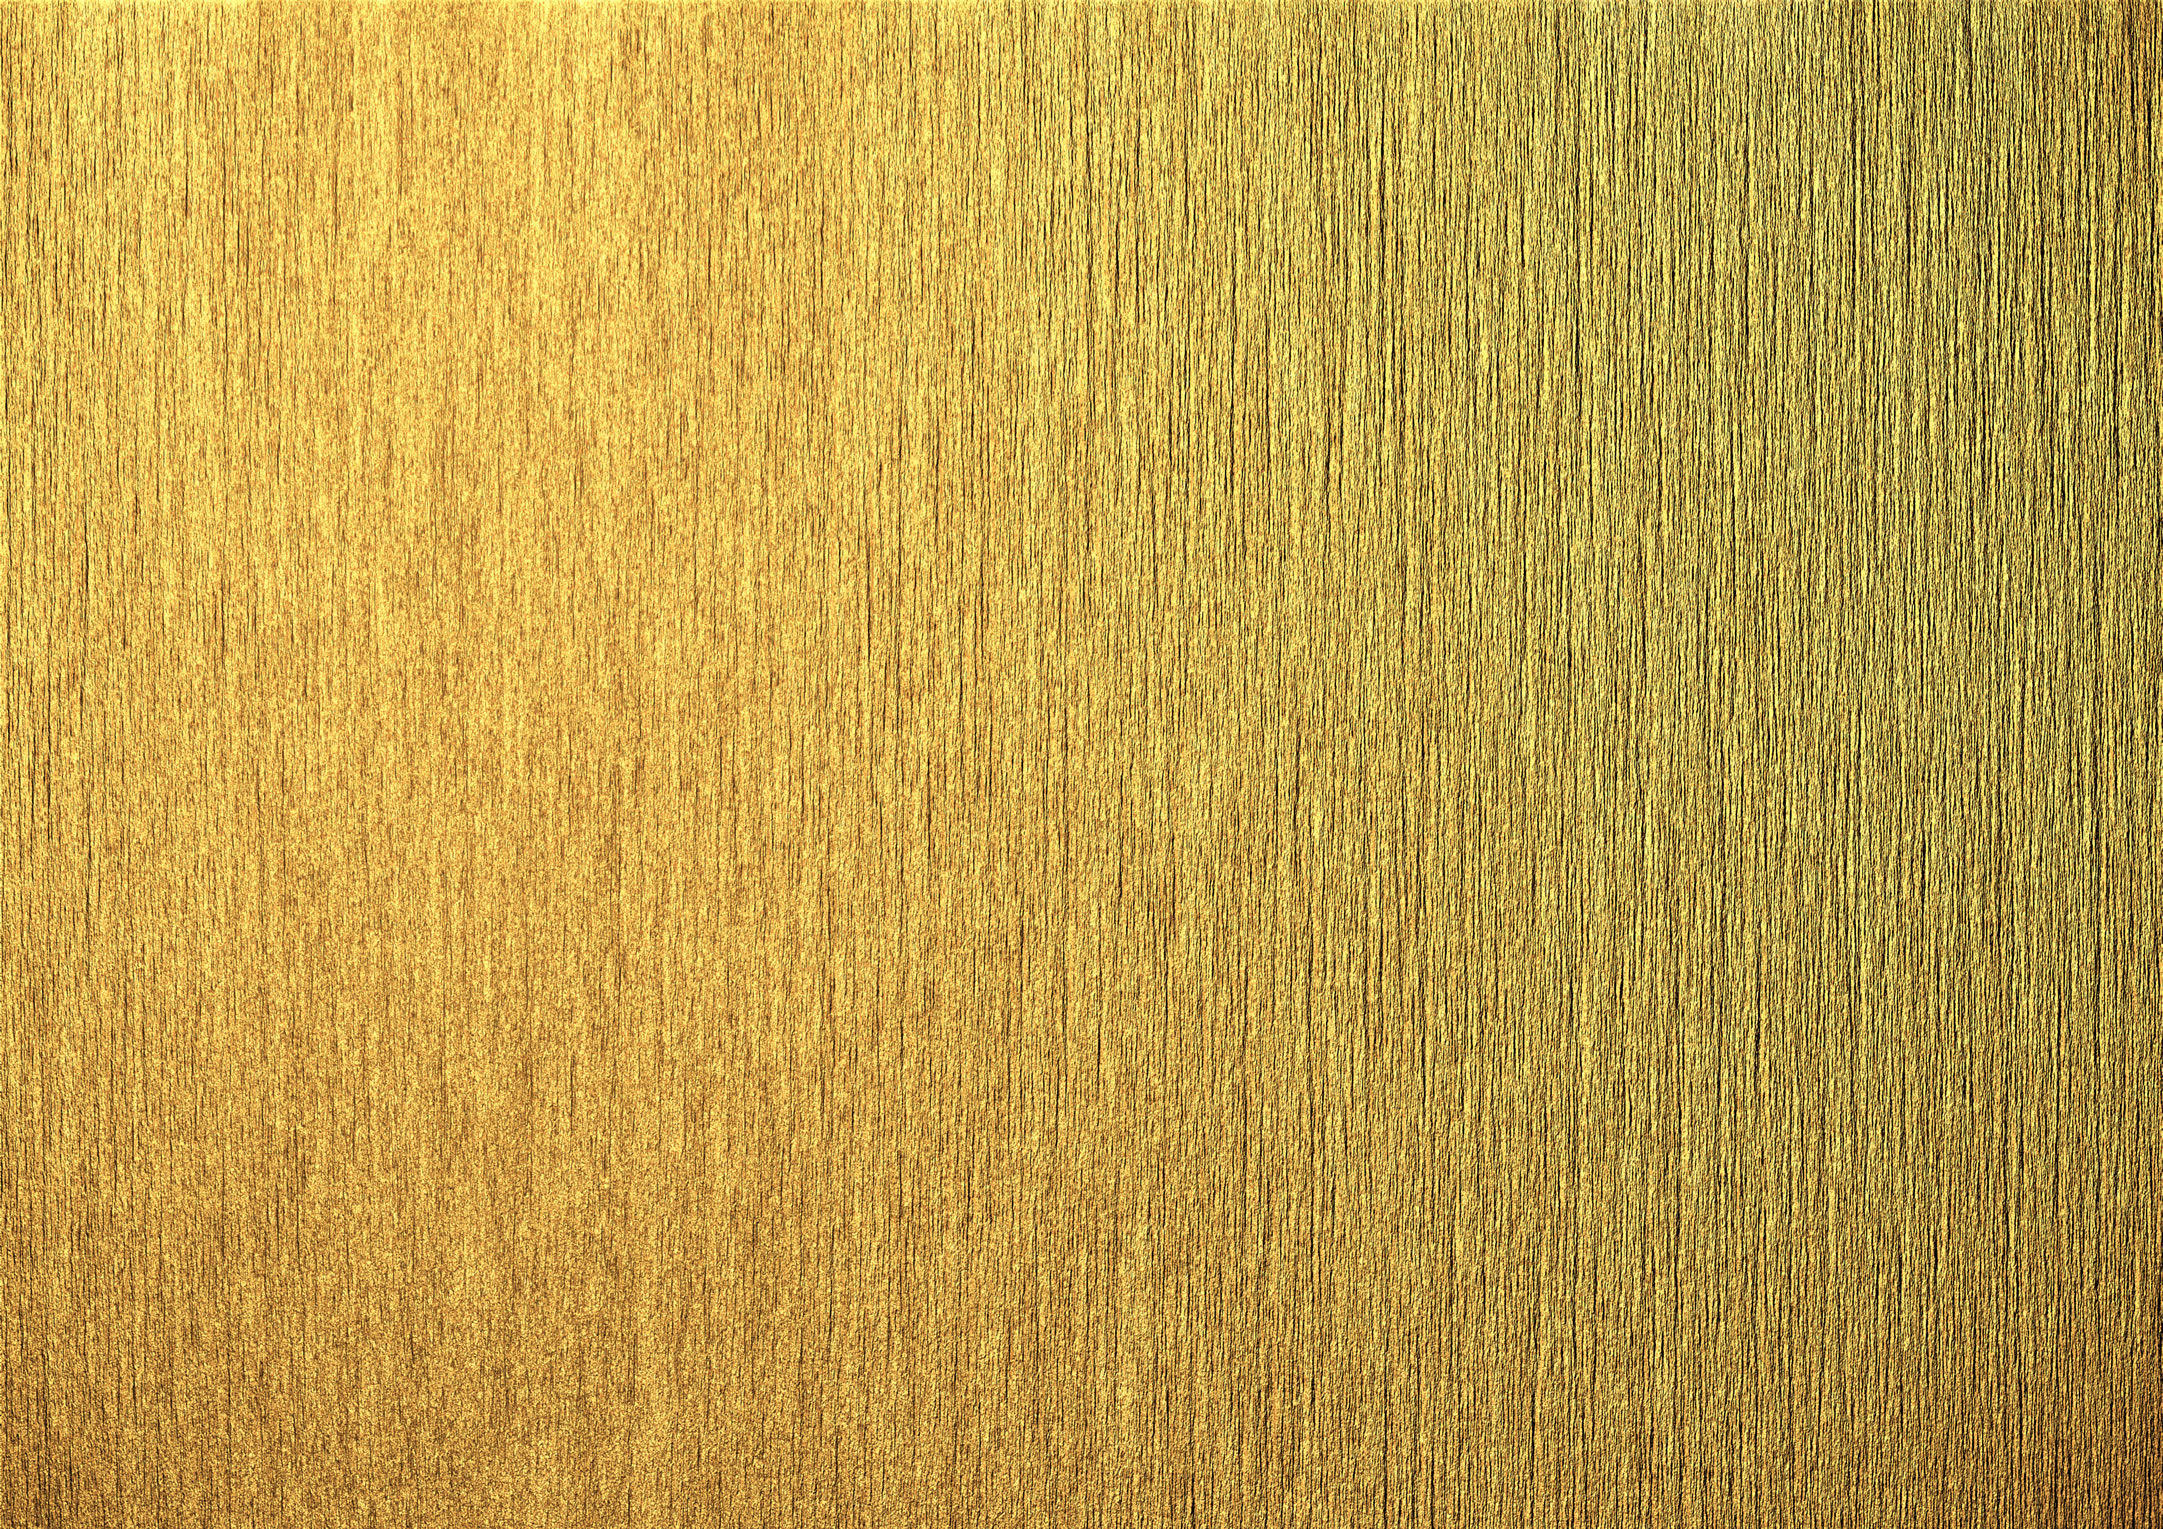 Скачать текстуру в высоком разрешении: gold texture, текстура золота, золото,  золотой фон, background